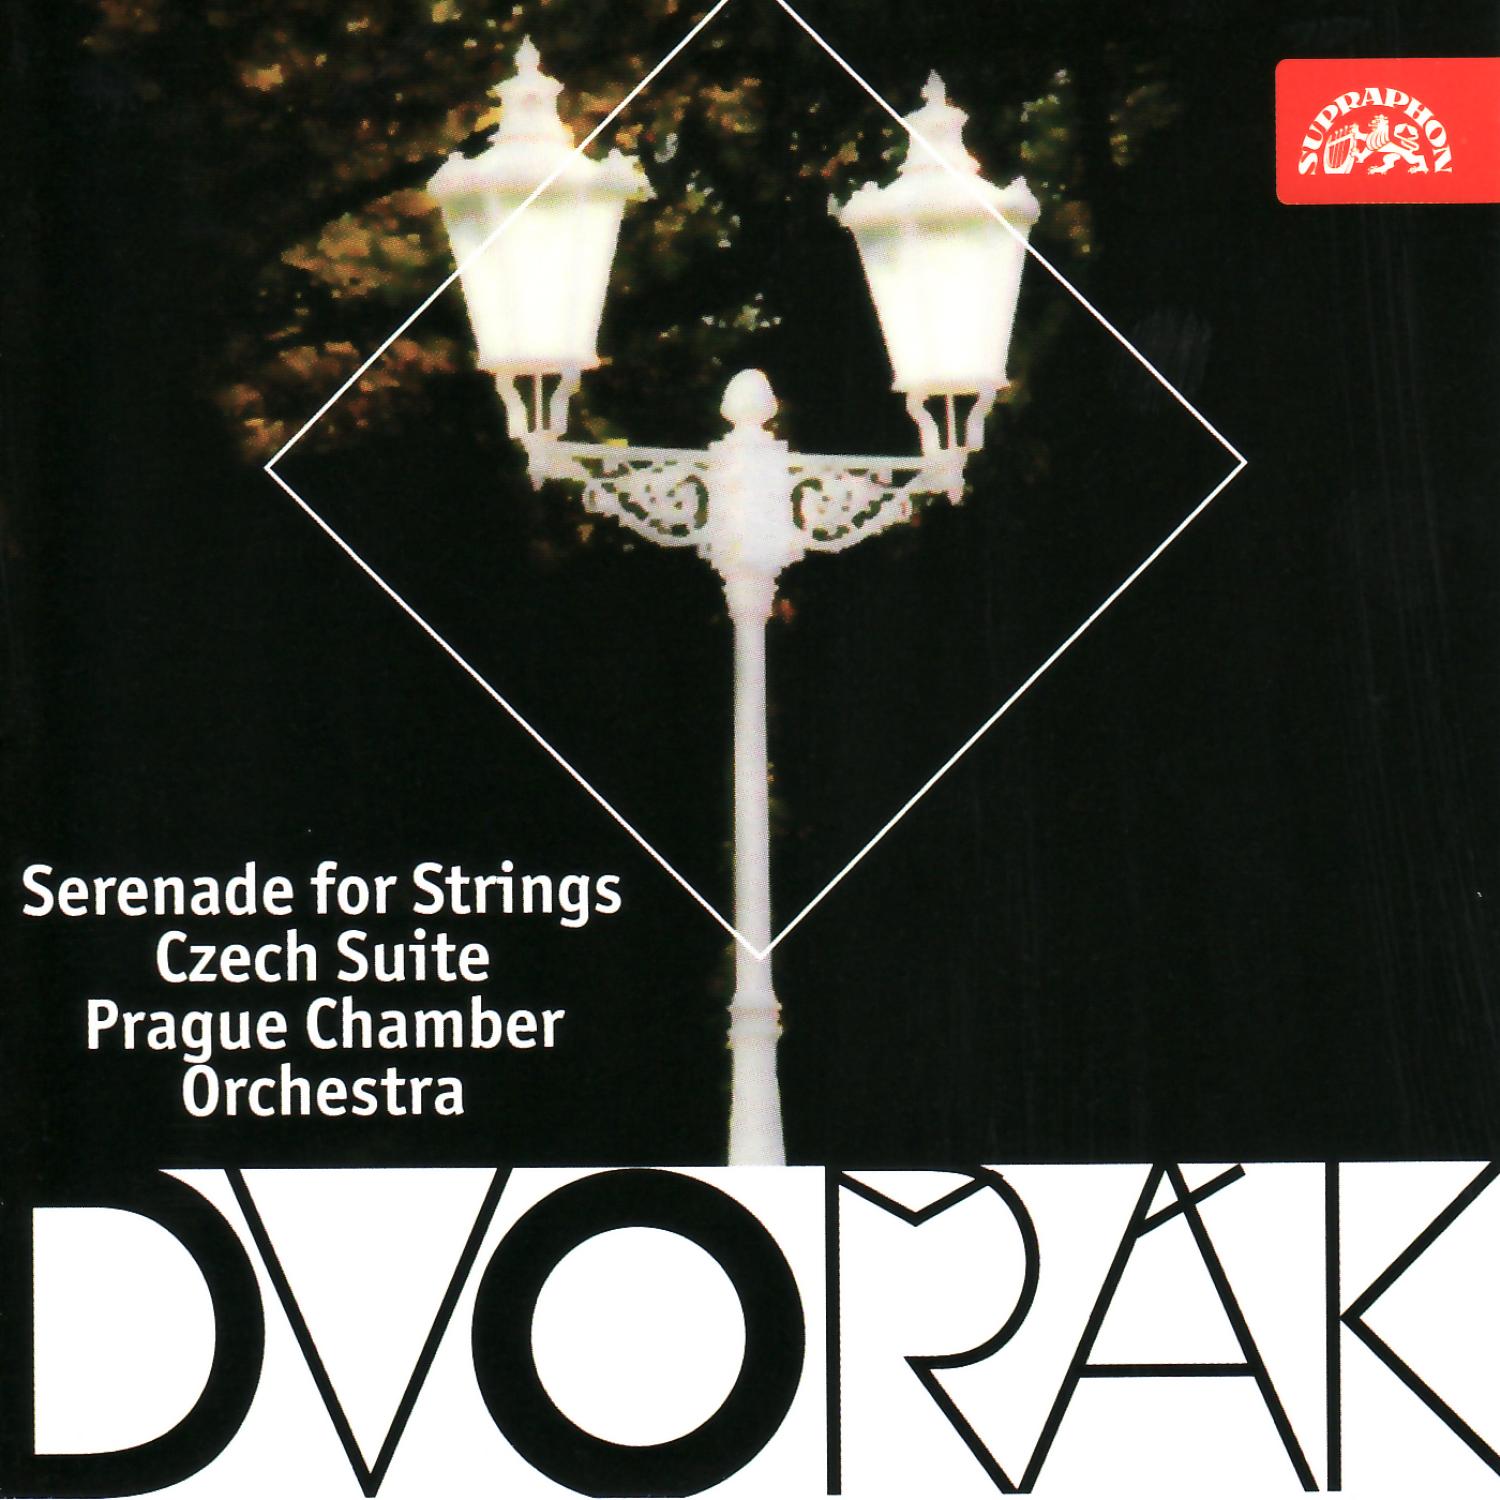 Dvoa k: Serenade for Strings, Czech Suite